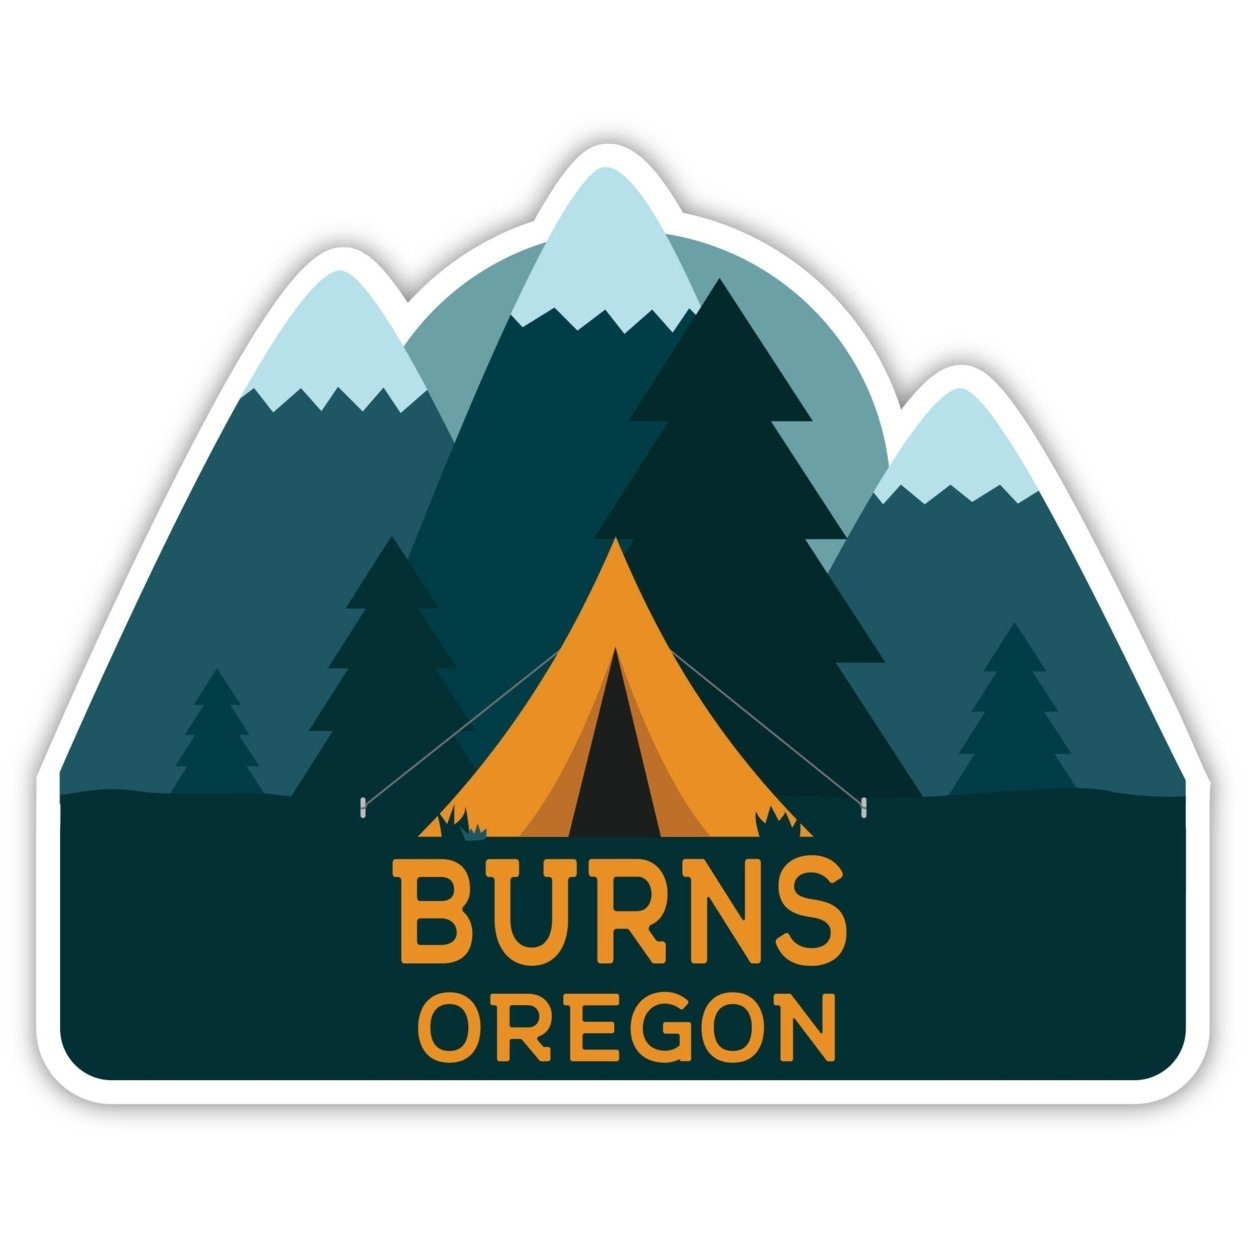 Burns Oregon Souvenir Decorative Stickers (Choose Theme And Size) - Single Unit, 6-Inch, Tent